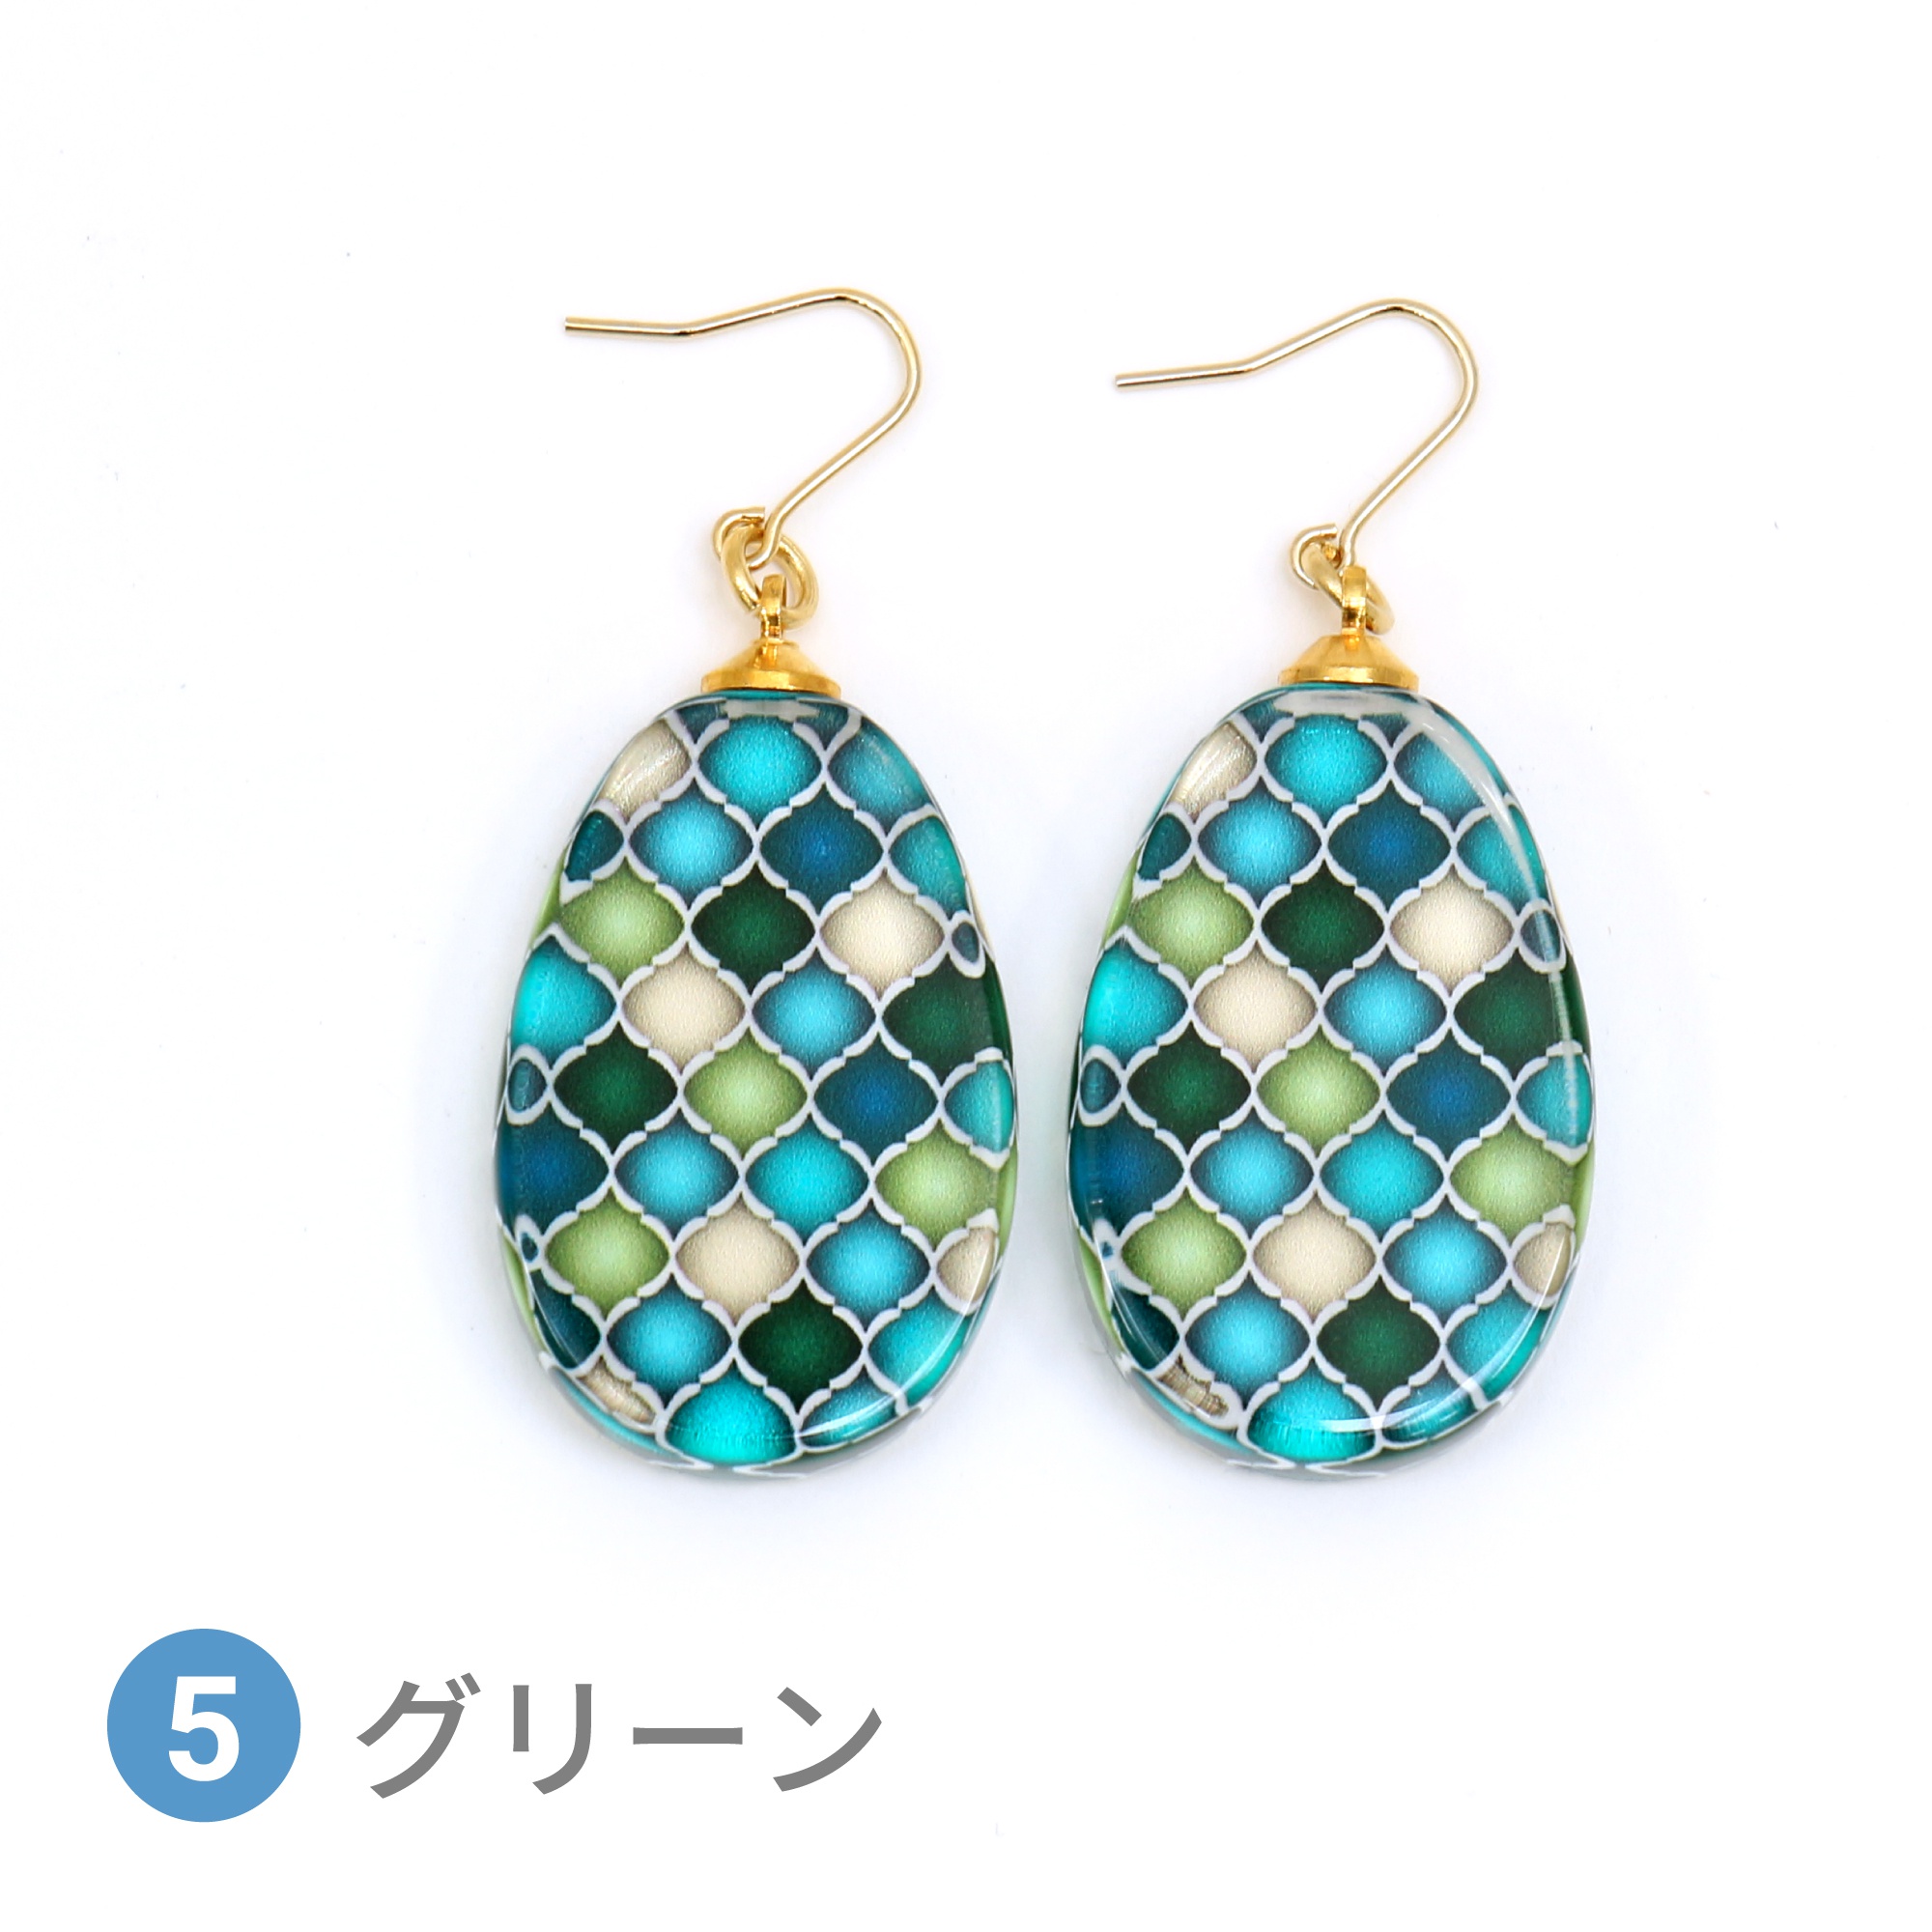 Glass accessories Pierced Earring MOROCCAN green drop shape